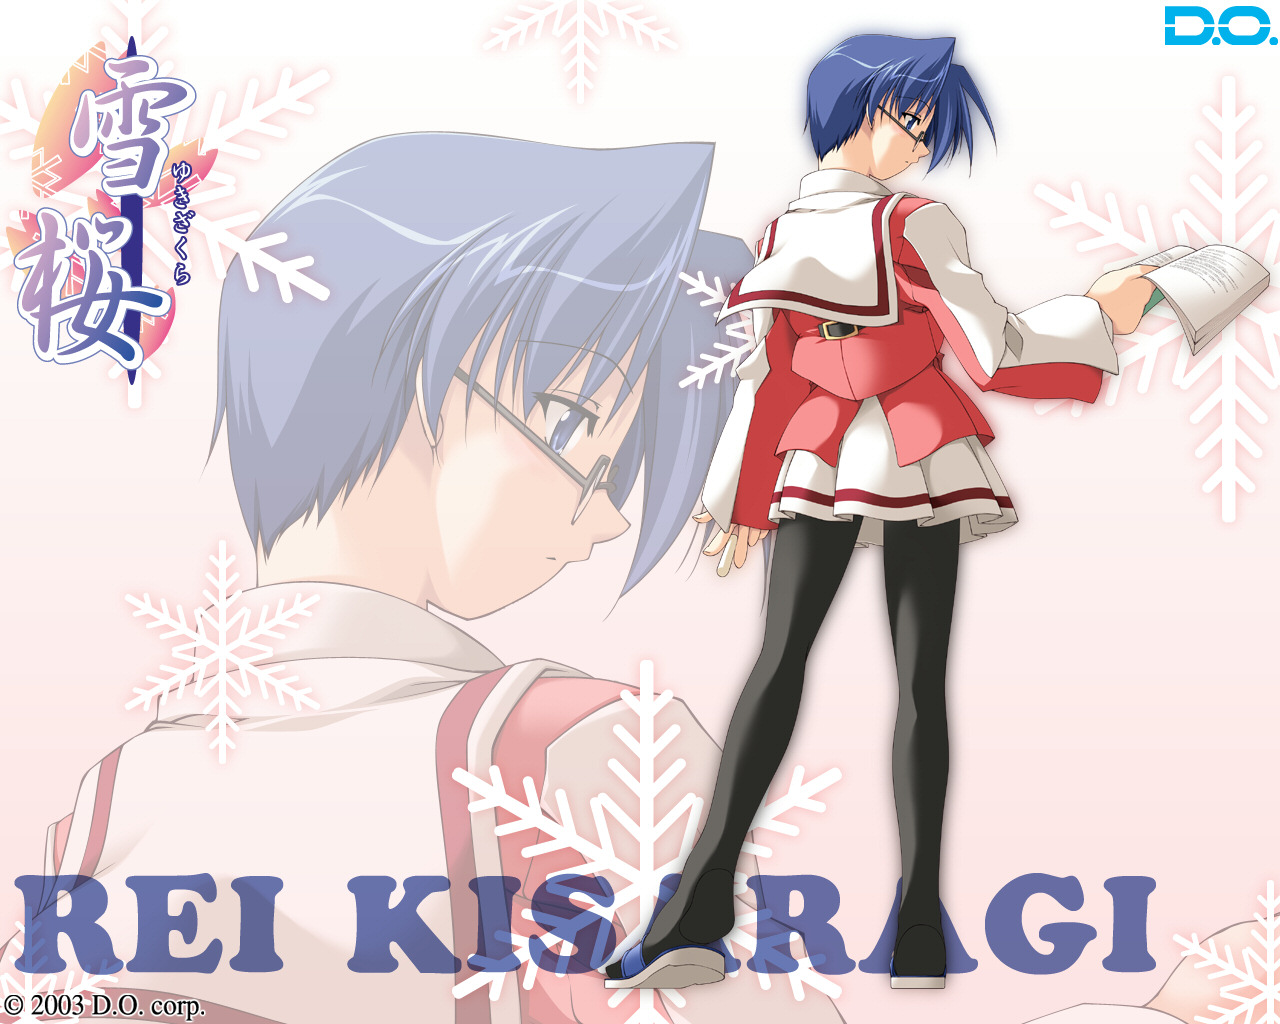 Download full size Yuki Sakura wallpaper / Anime / 1280x1024